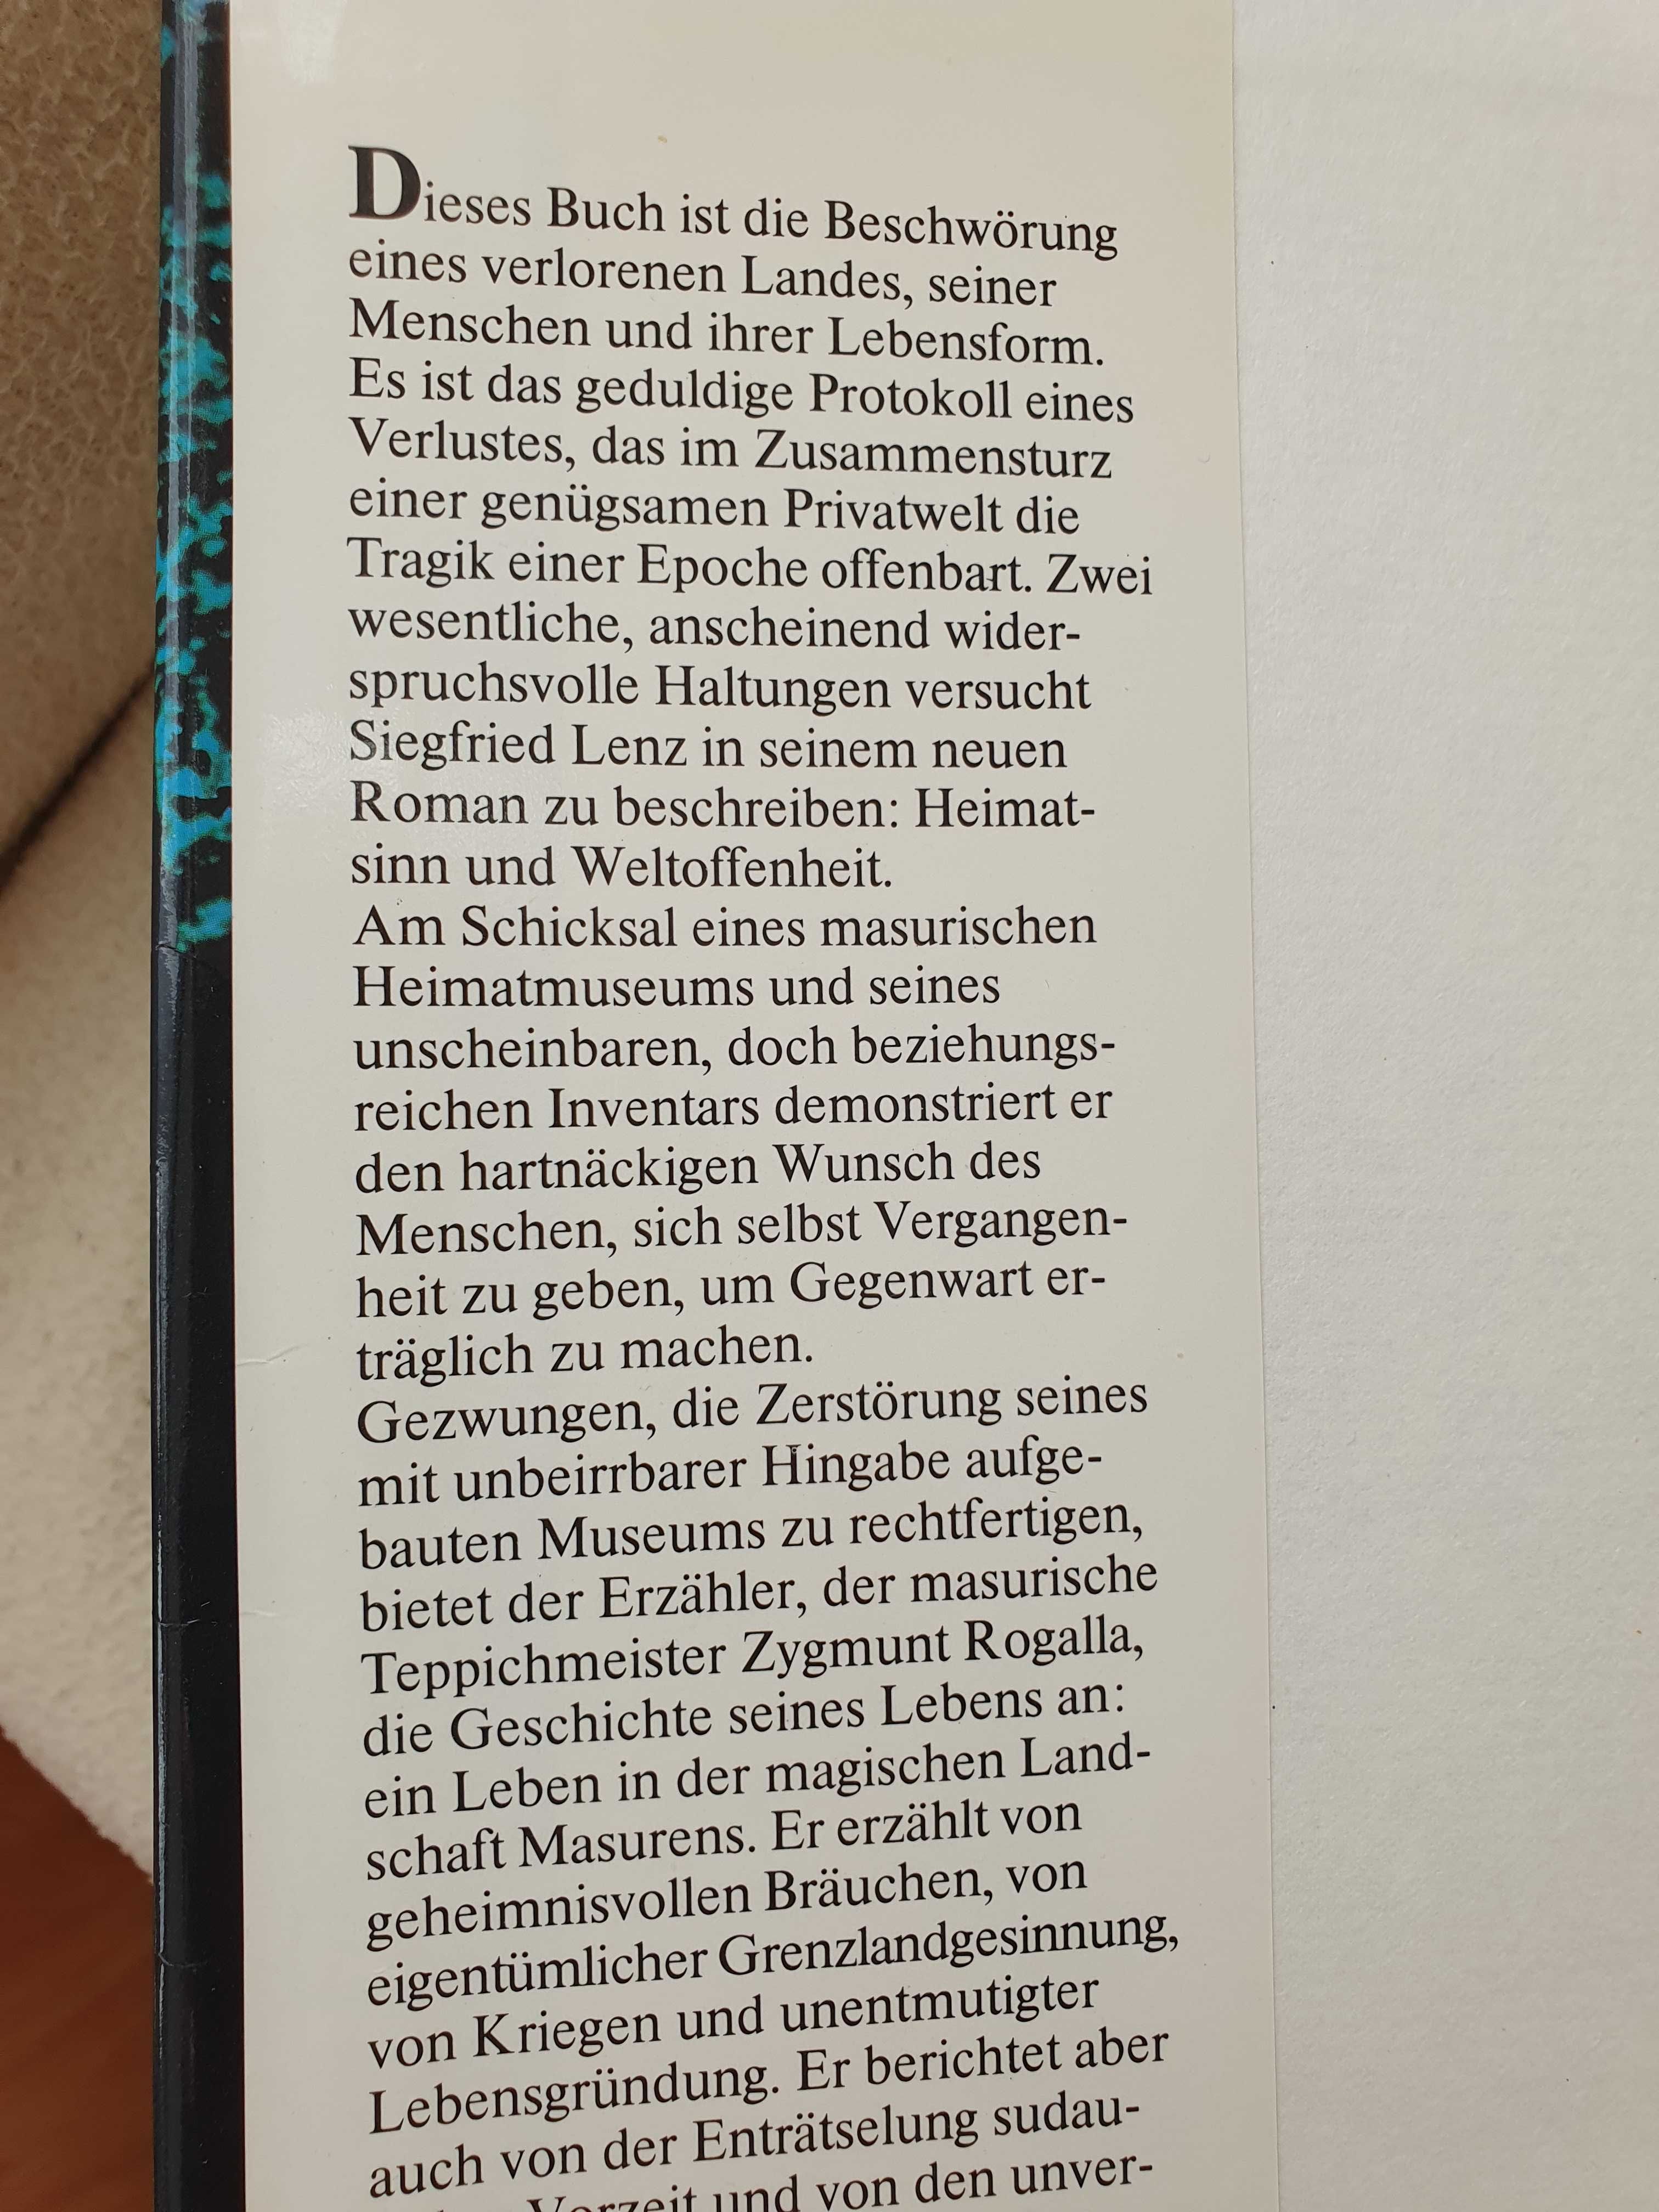 "Heimatmuseum" _ Sigfried Lenz